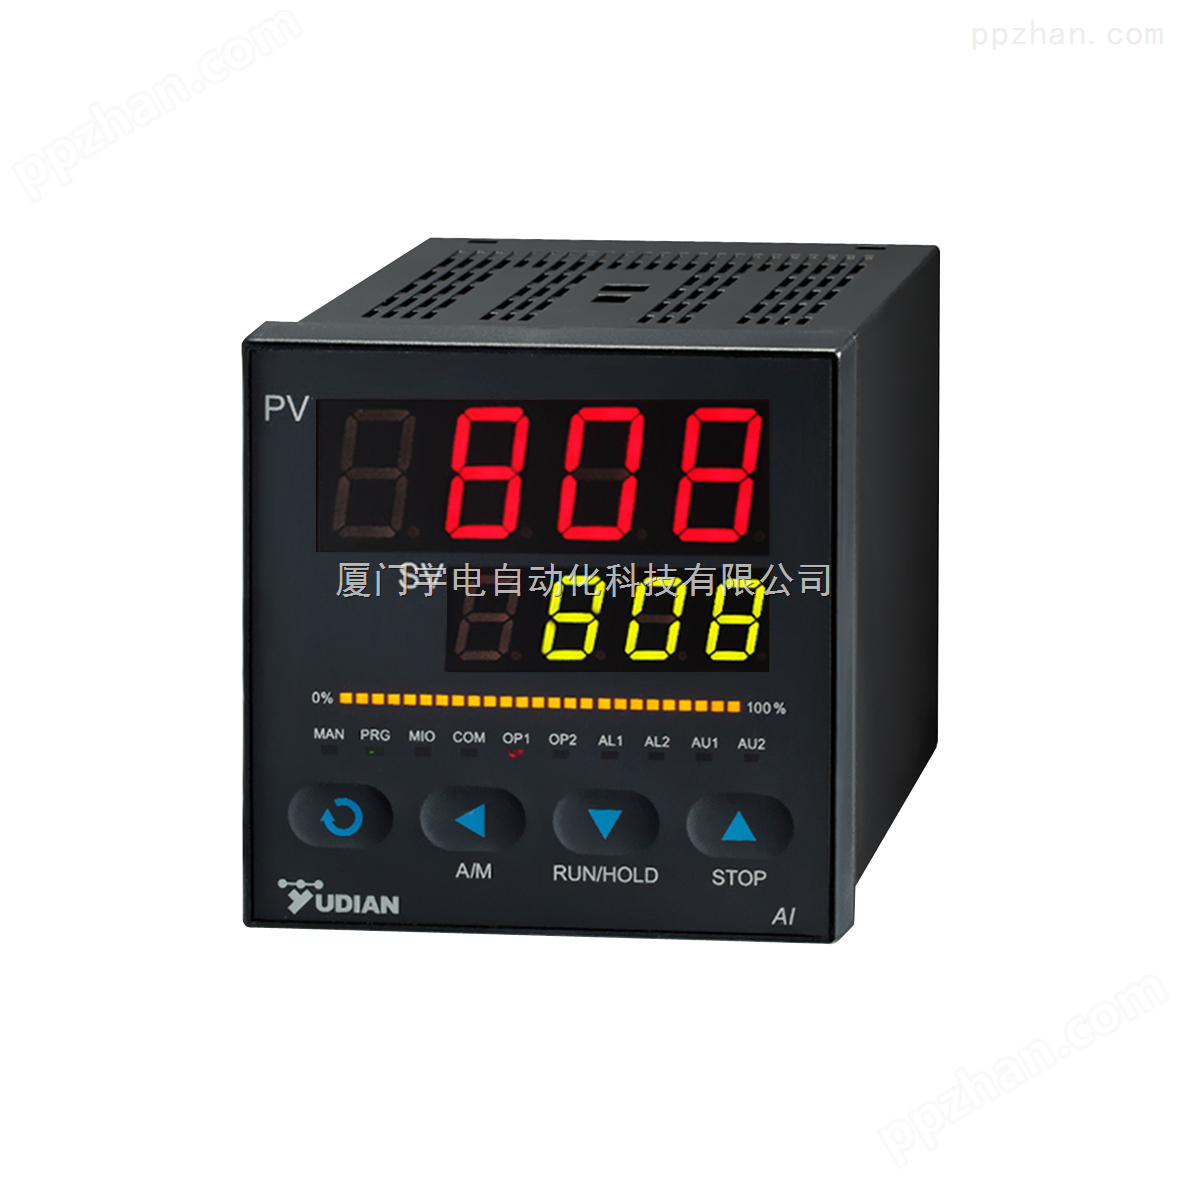 厦门宇电温控器AI-808系列